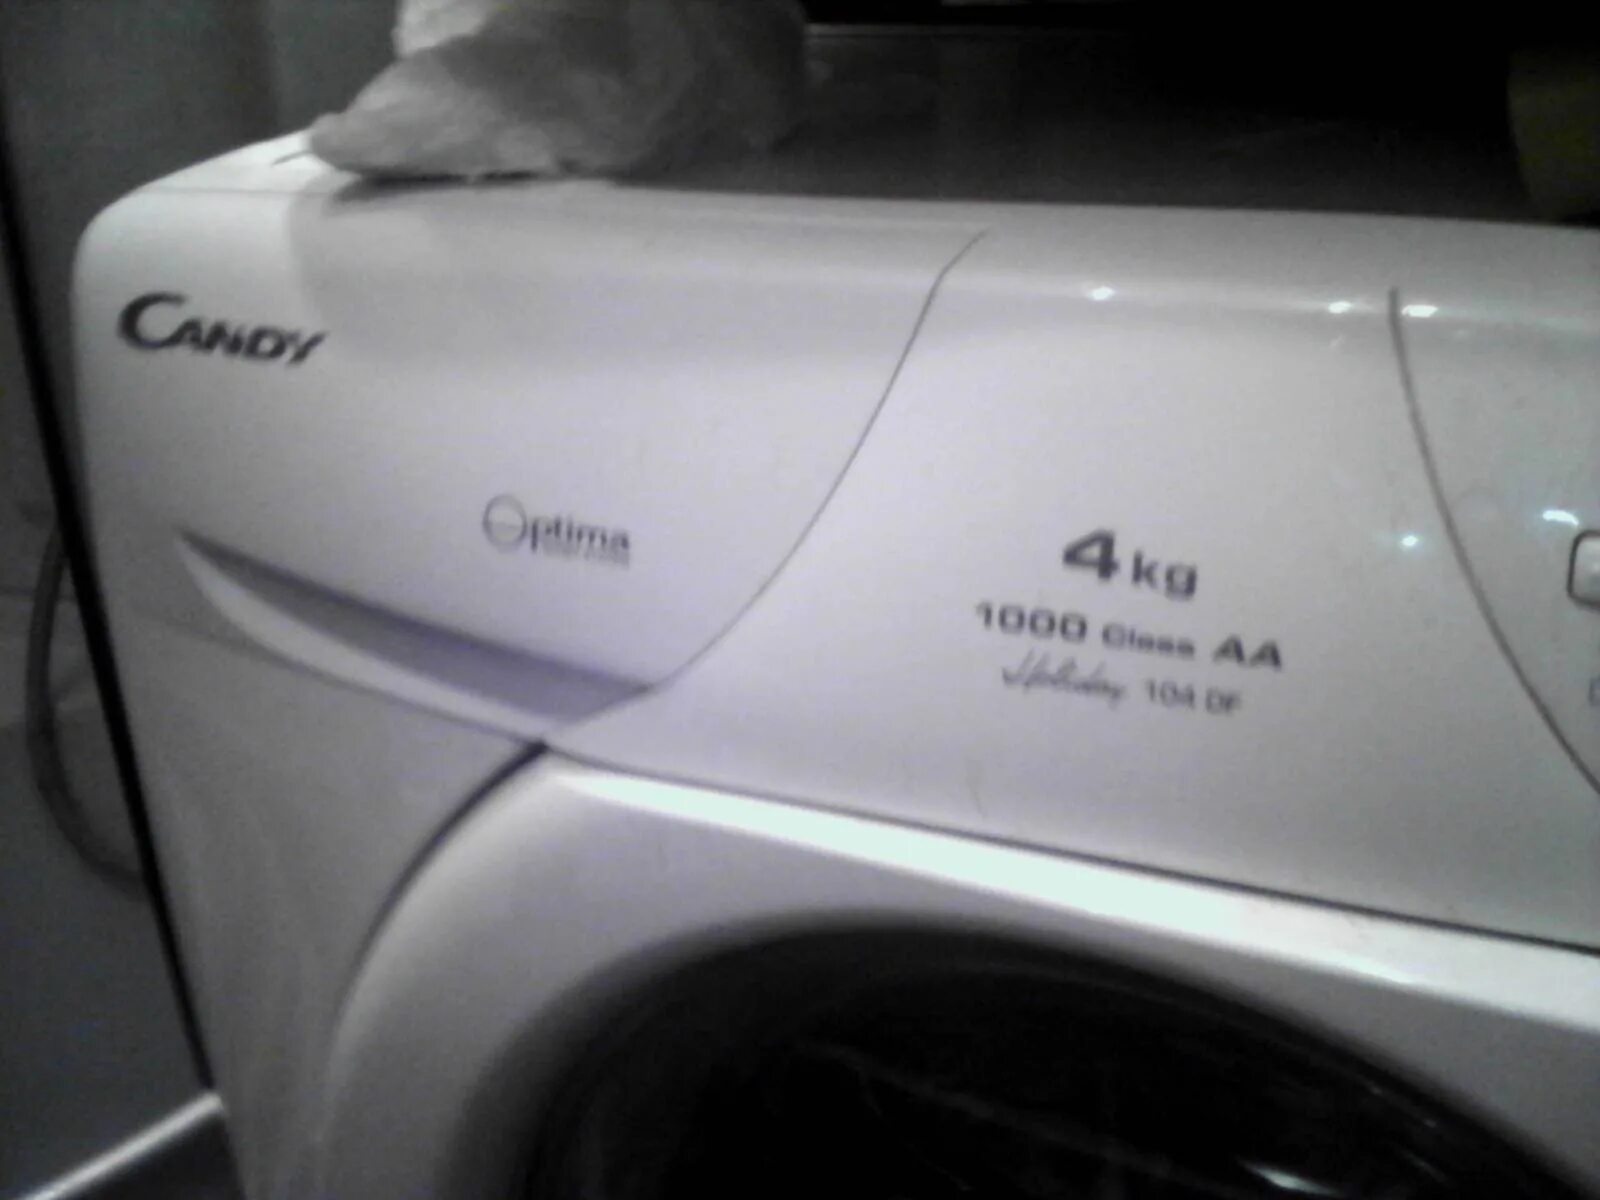 Канди оптима. Candy Optima 104f. Candy Optima Wash System 104f. Стиральная машина Candy Optima Wash System. Стиральная машина Канди Holiday 104f.